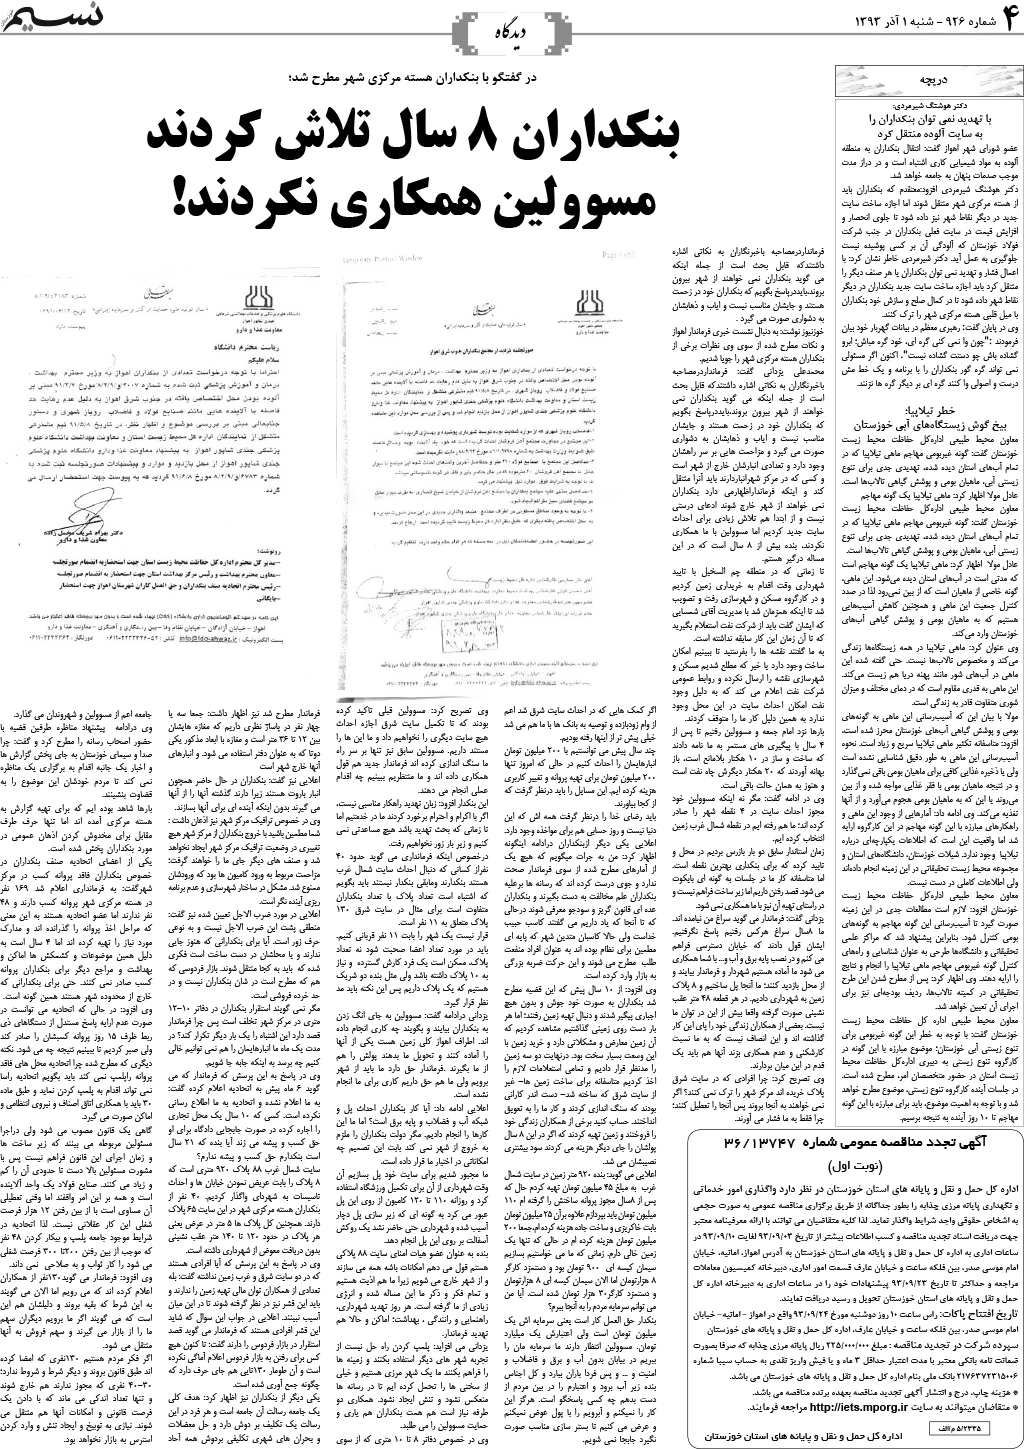 صفحه دیدگاه روزنامه نسیم شماره 926